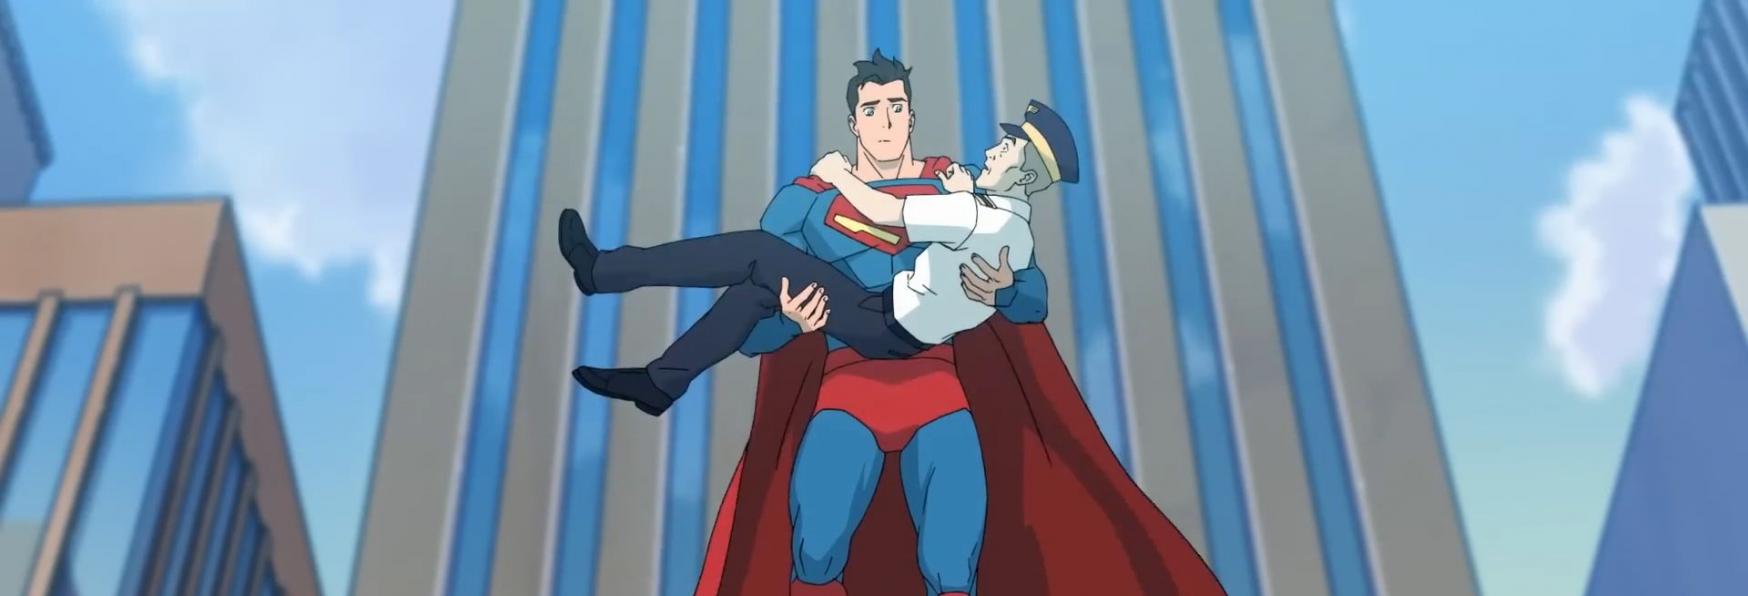 My Adventures with Superman: il Trailer e la Data di Uscita della Serie Animata